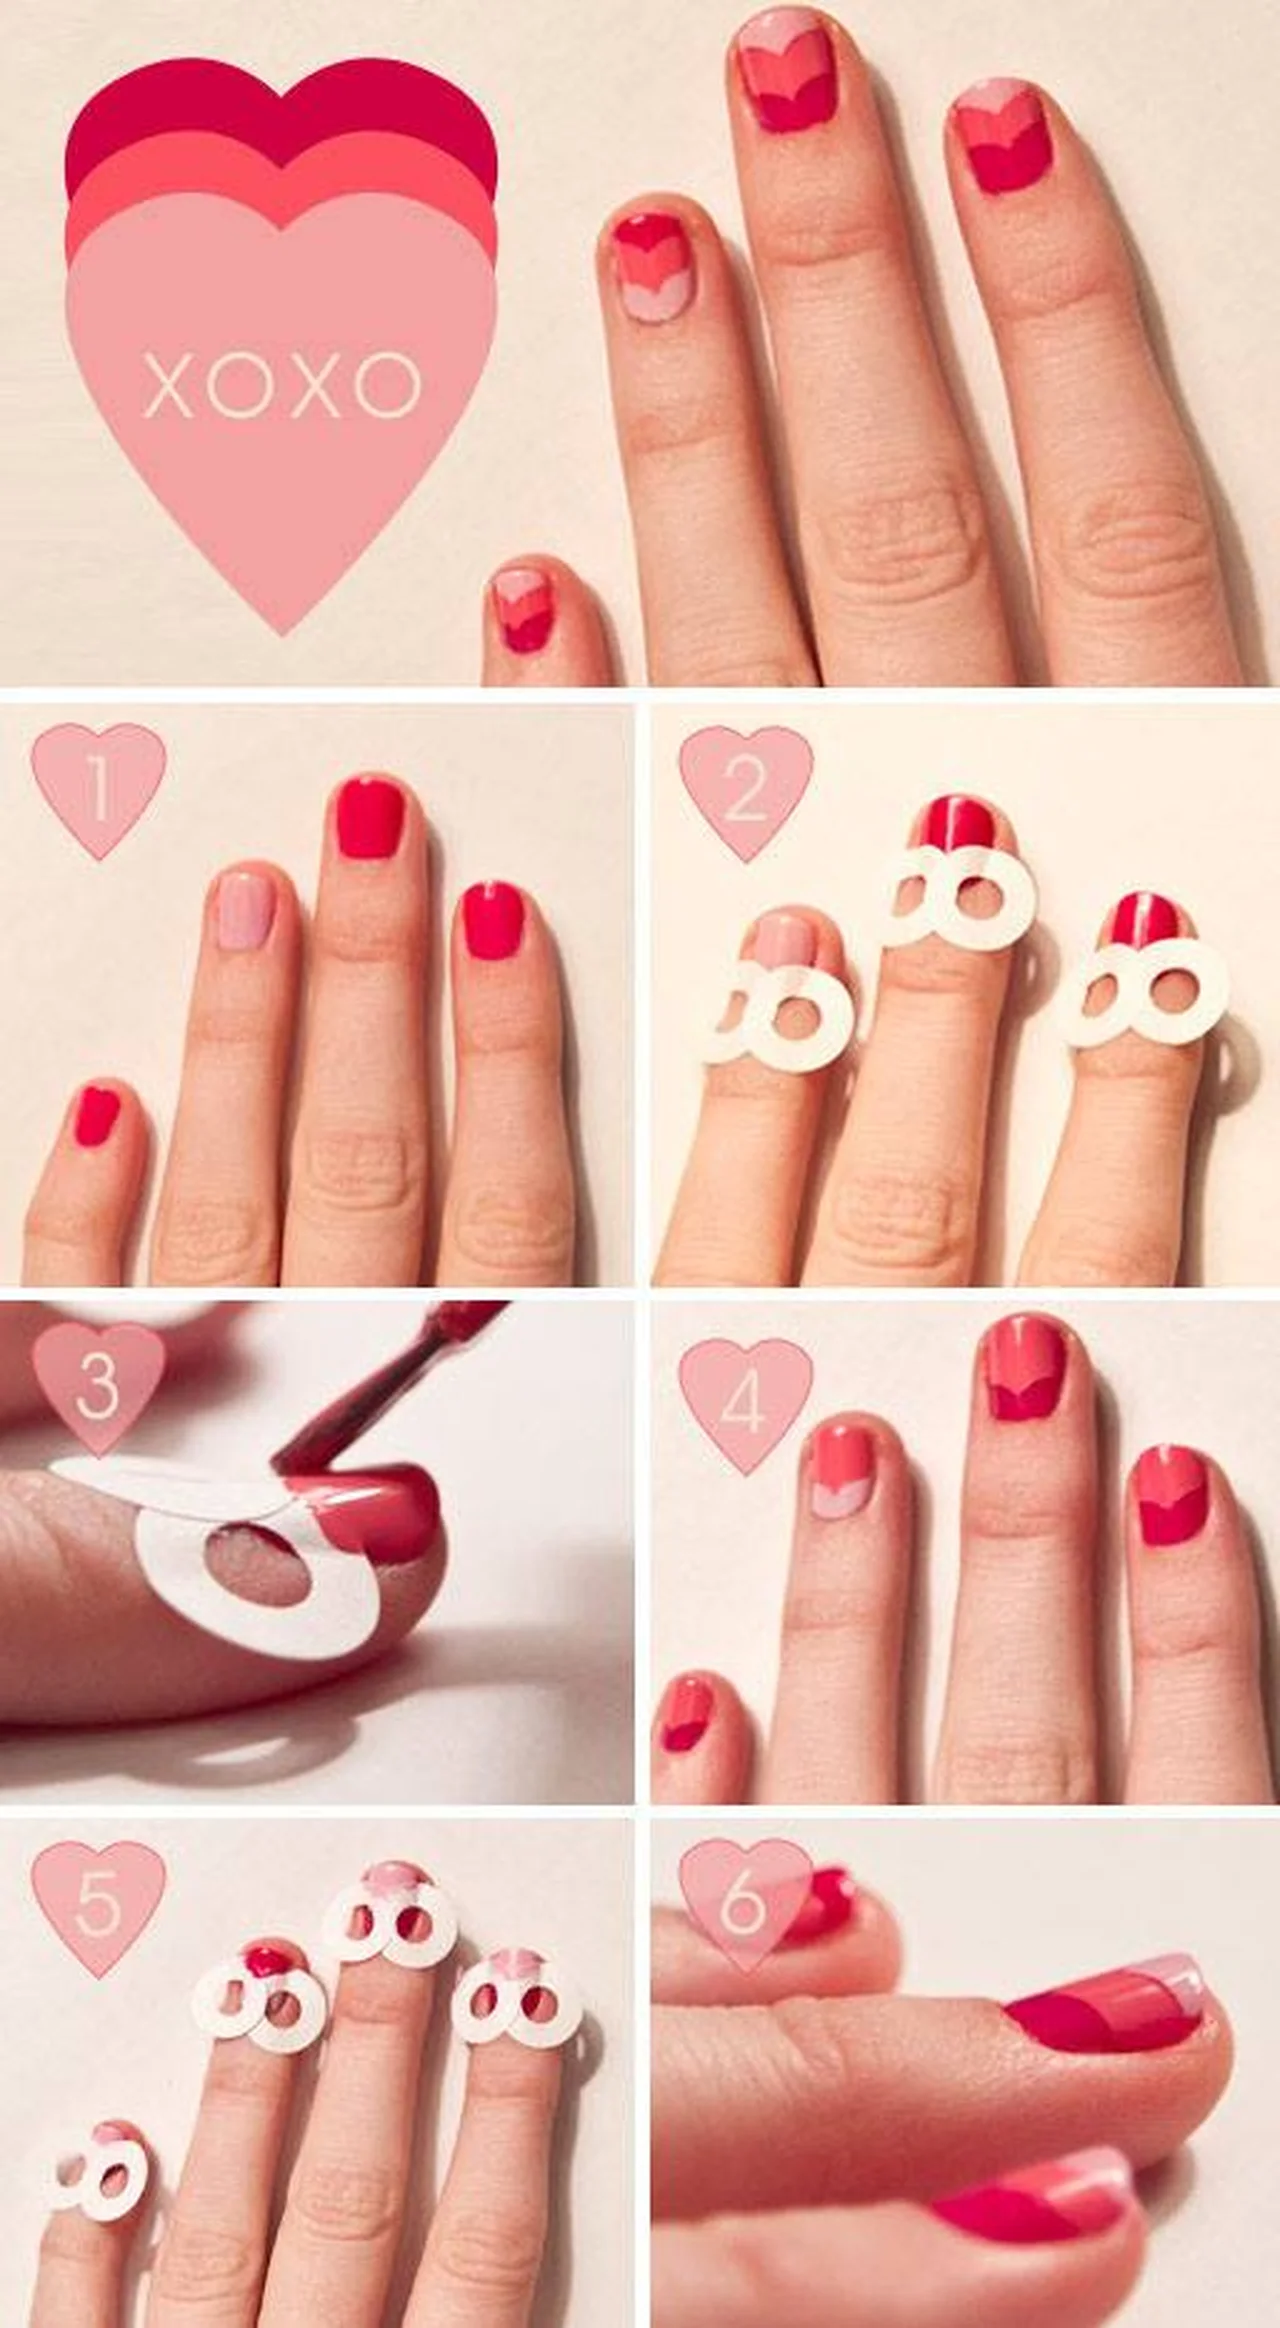 Prosty sposób na piękne paznokcie